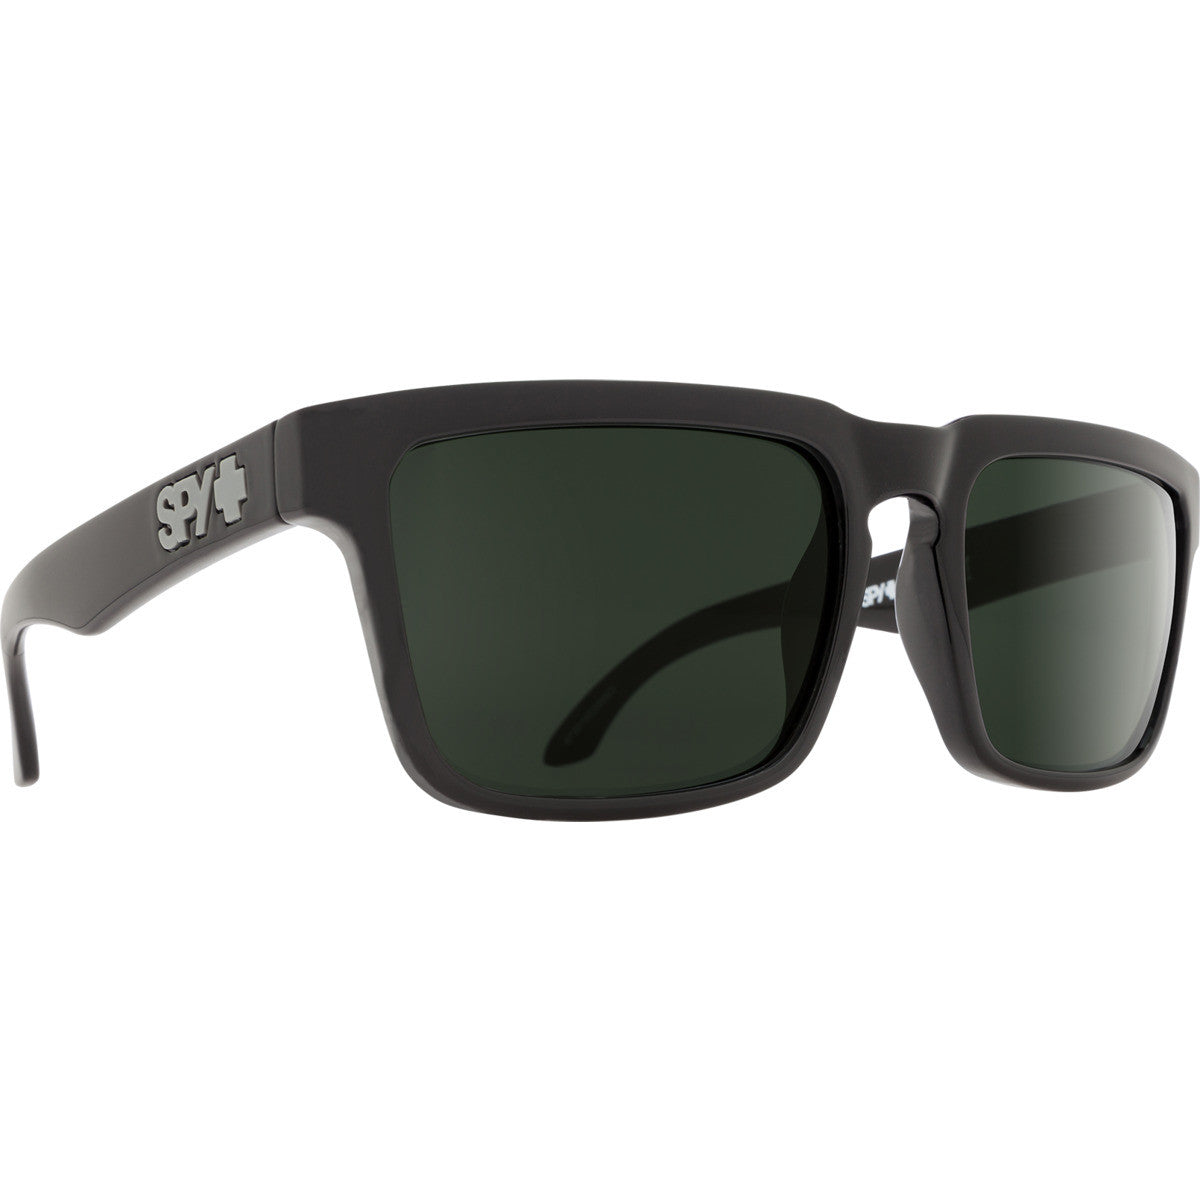 Spy Helm Sunglasses  Black Medium-Large M-L 54-61